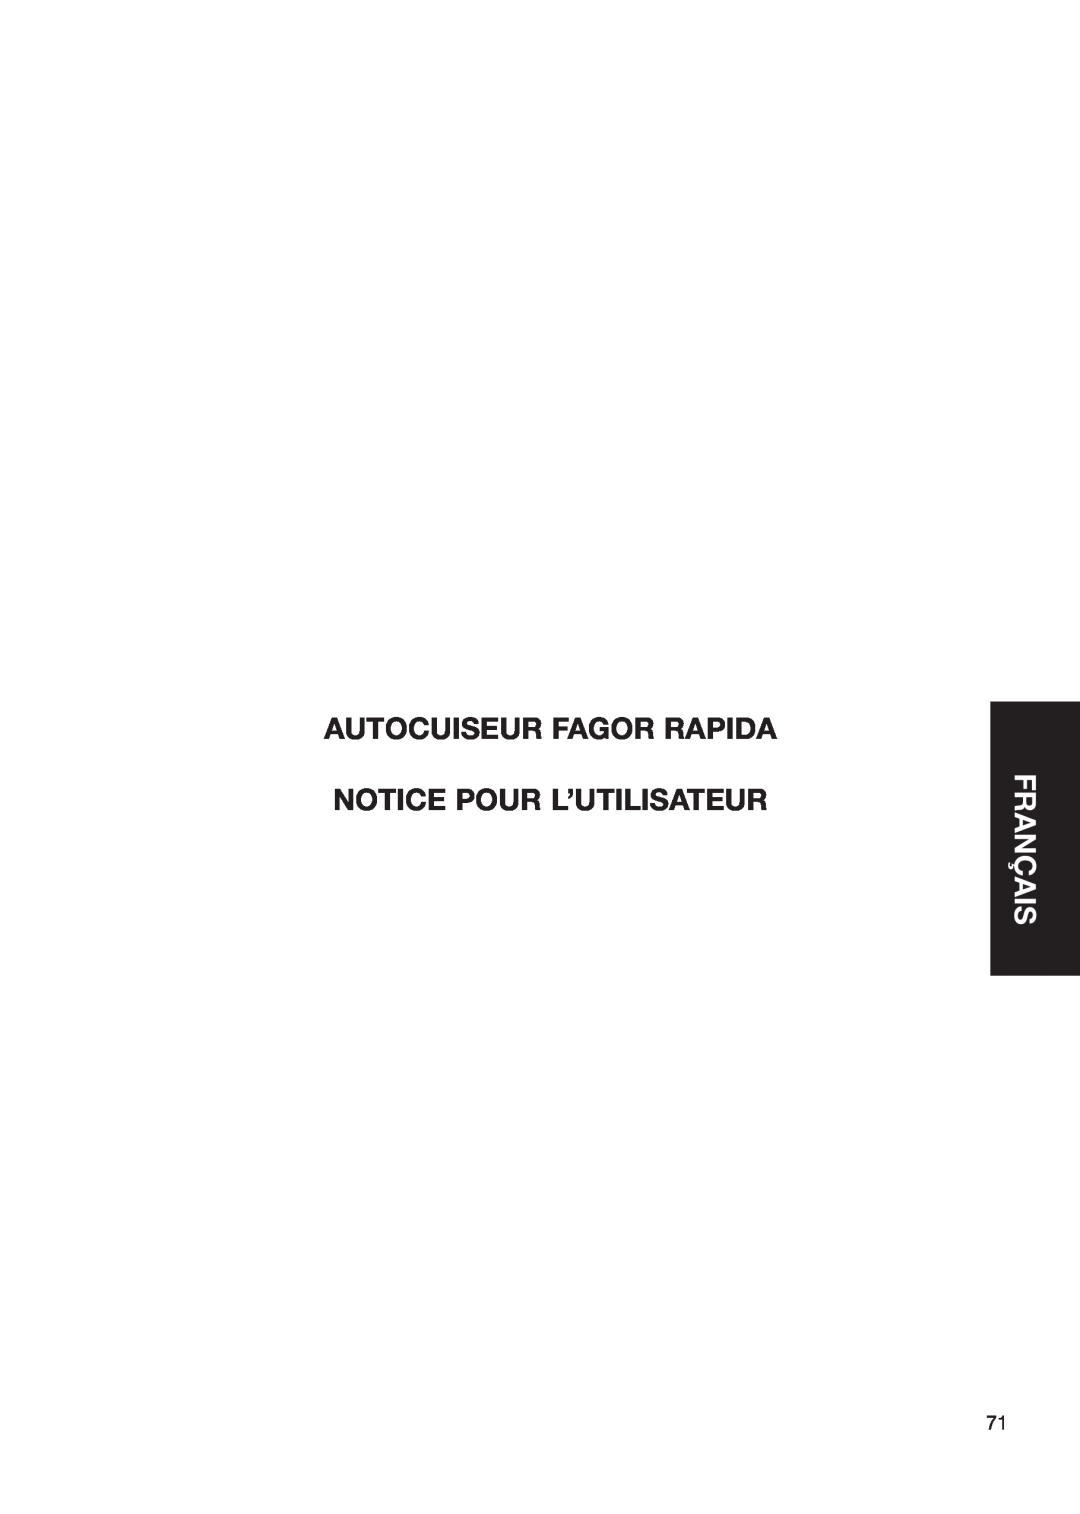 Fagor America Fagor Rapida Pressure Cooker user manual Autocuiseur Fagor Rapida, Notice Pour L’Utilisateur, Français 